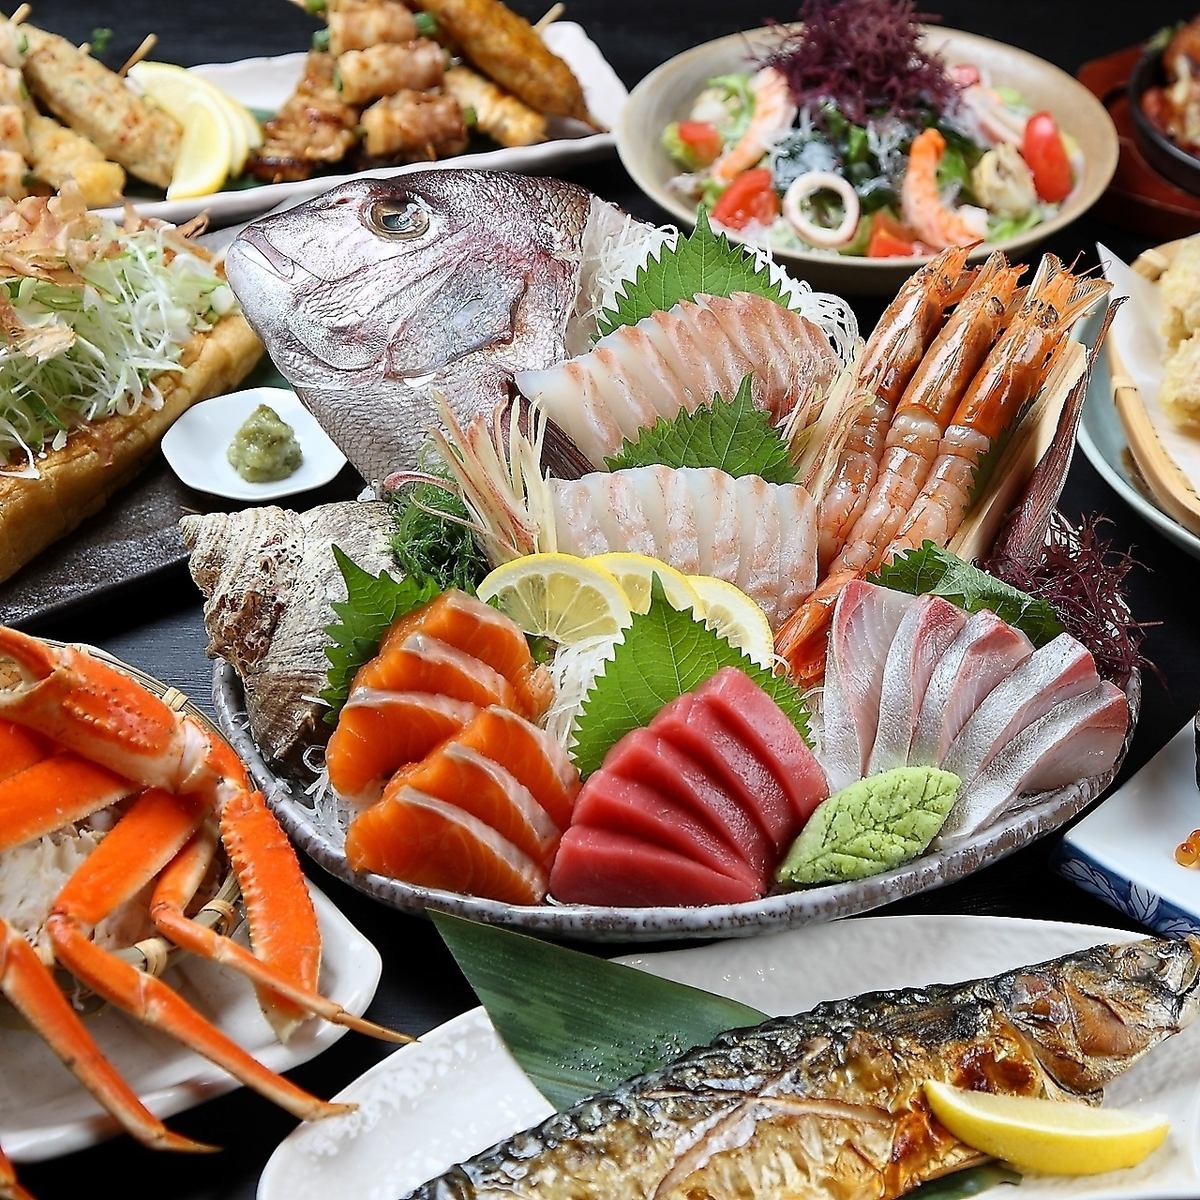 我們的特色菜是鮮魚拼盤，注重新新鮮度和品質。